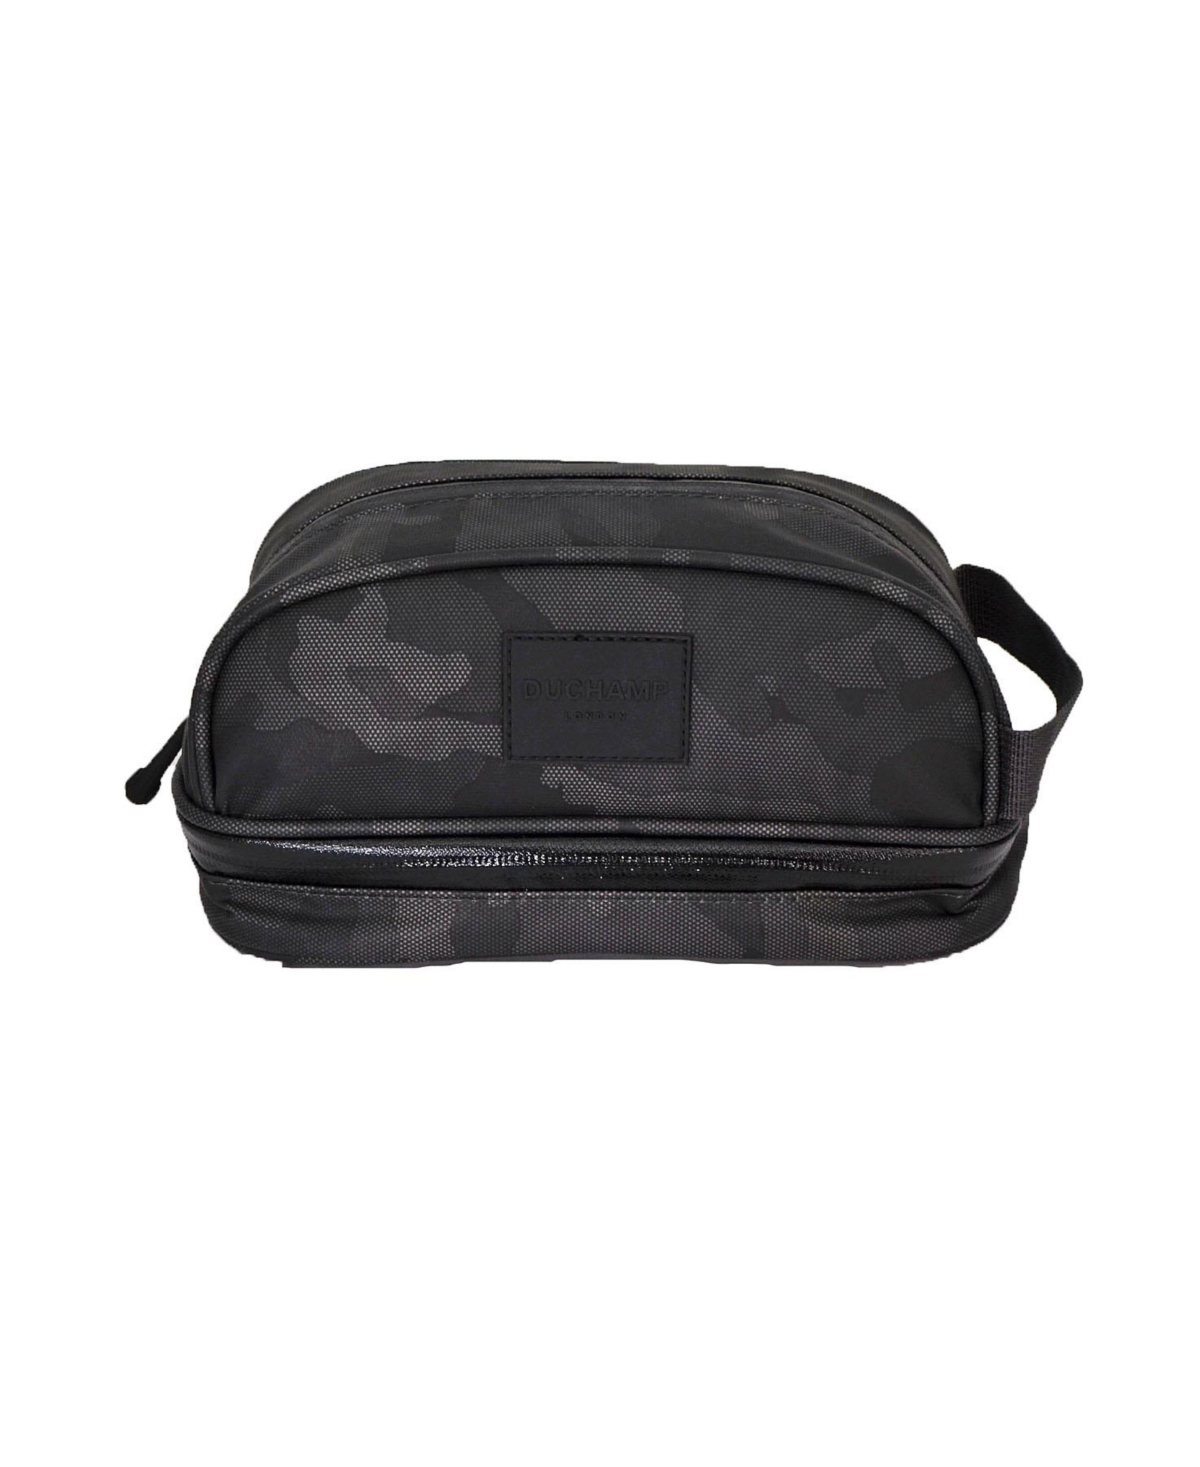 Duchamp London Men's Tech Friendly Travel Kit Bag